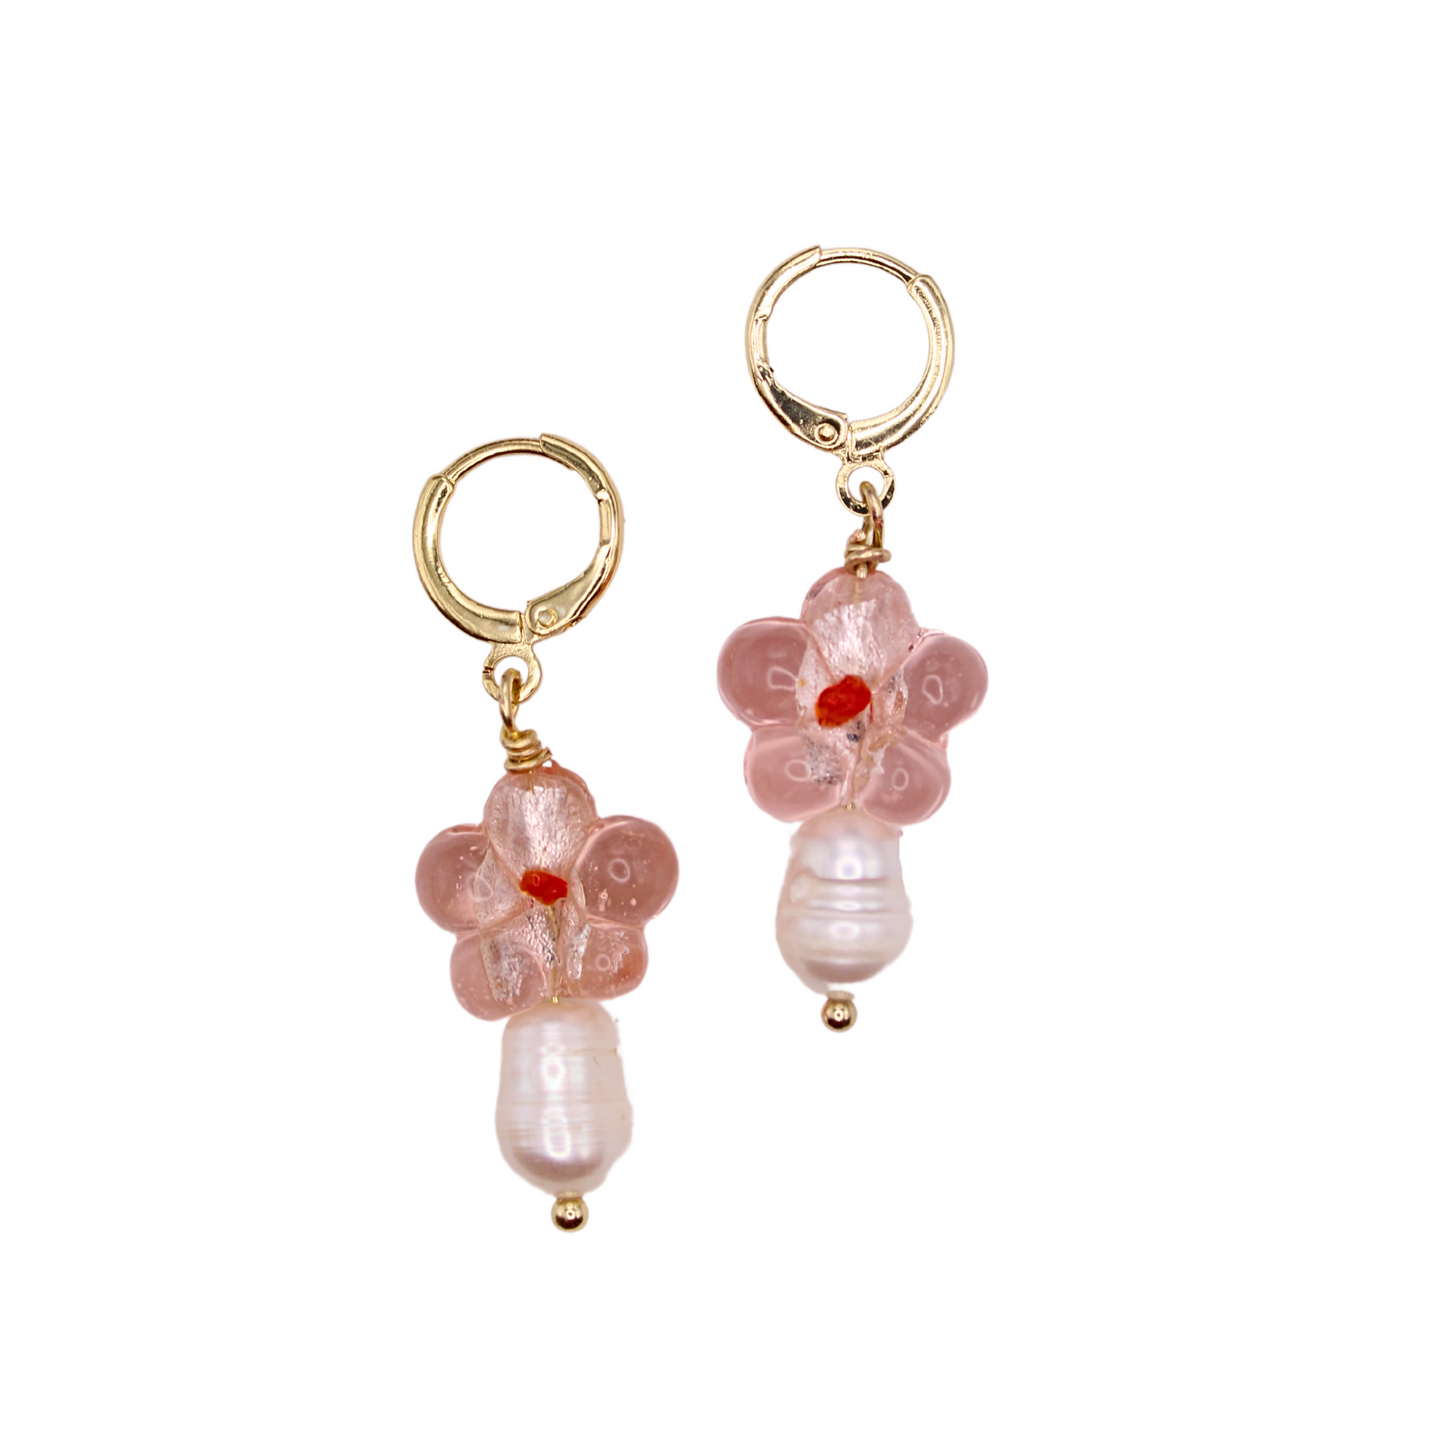 Hallie Glass Flower Hoop Earrings | Summer Nikole Jewelry